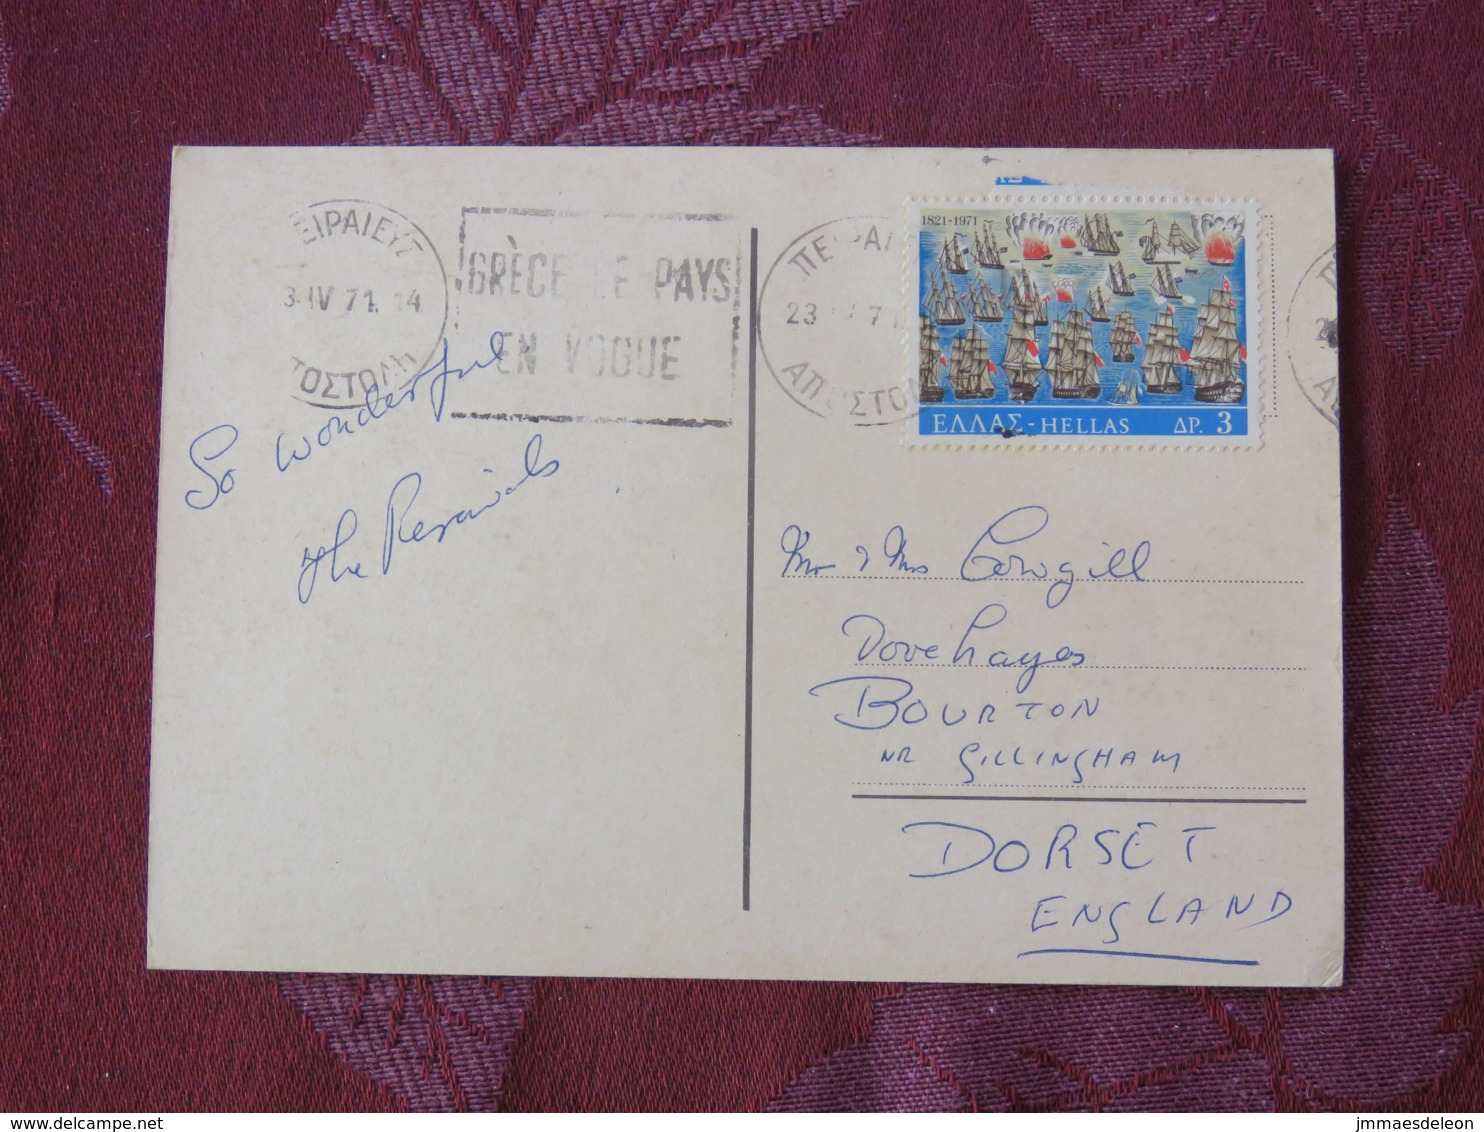 Greece 1971 Postcard "Delphi" To England - Ships - Greece